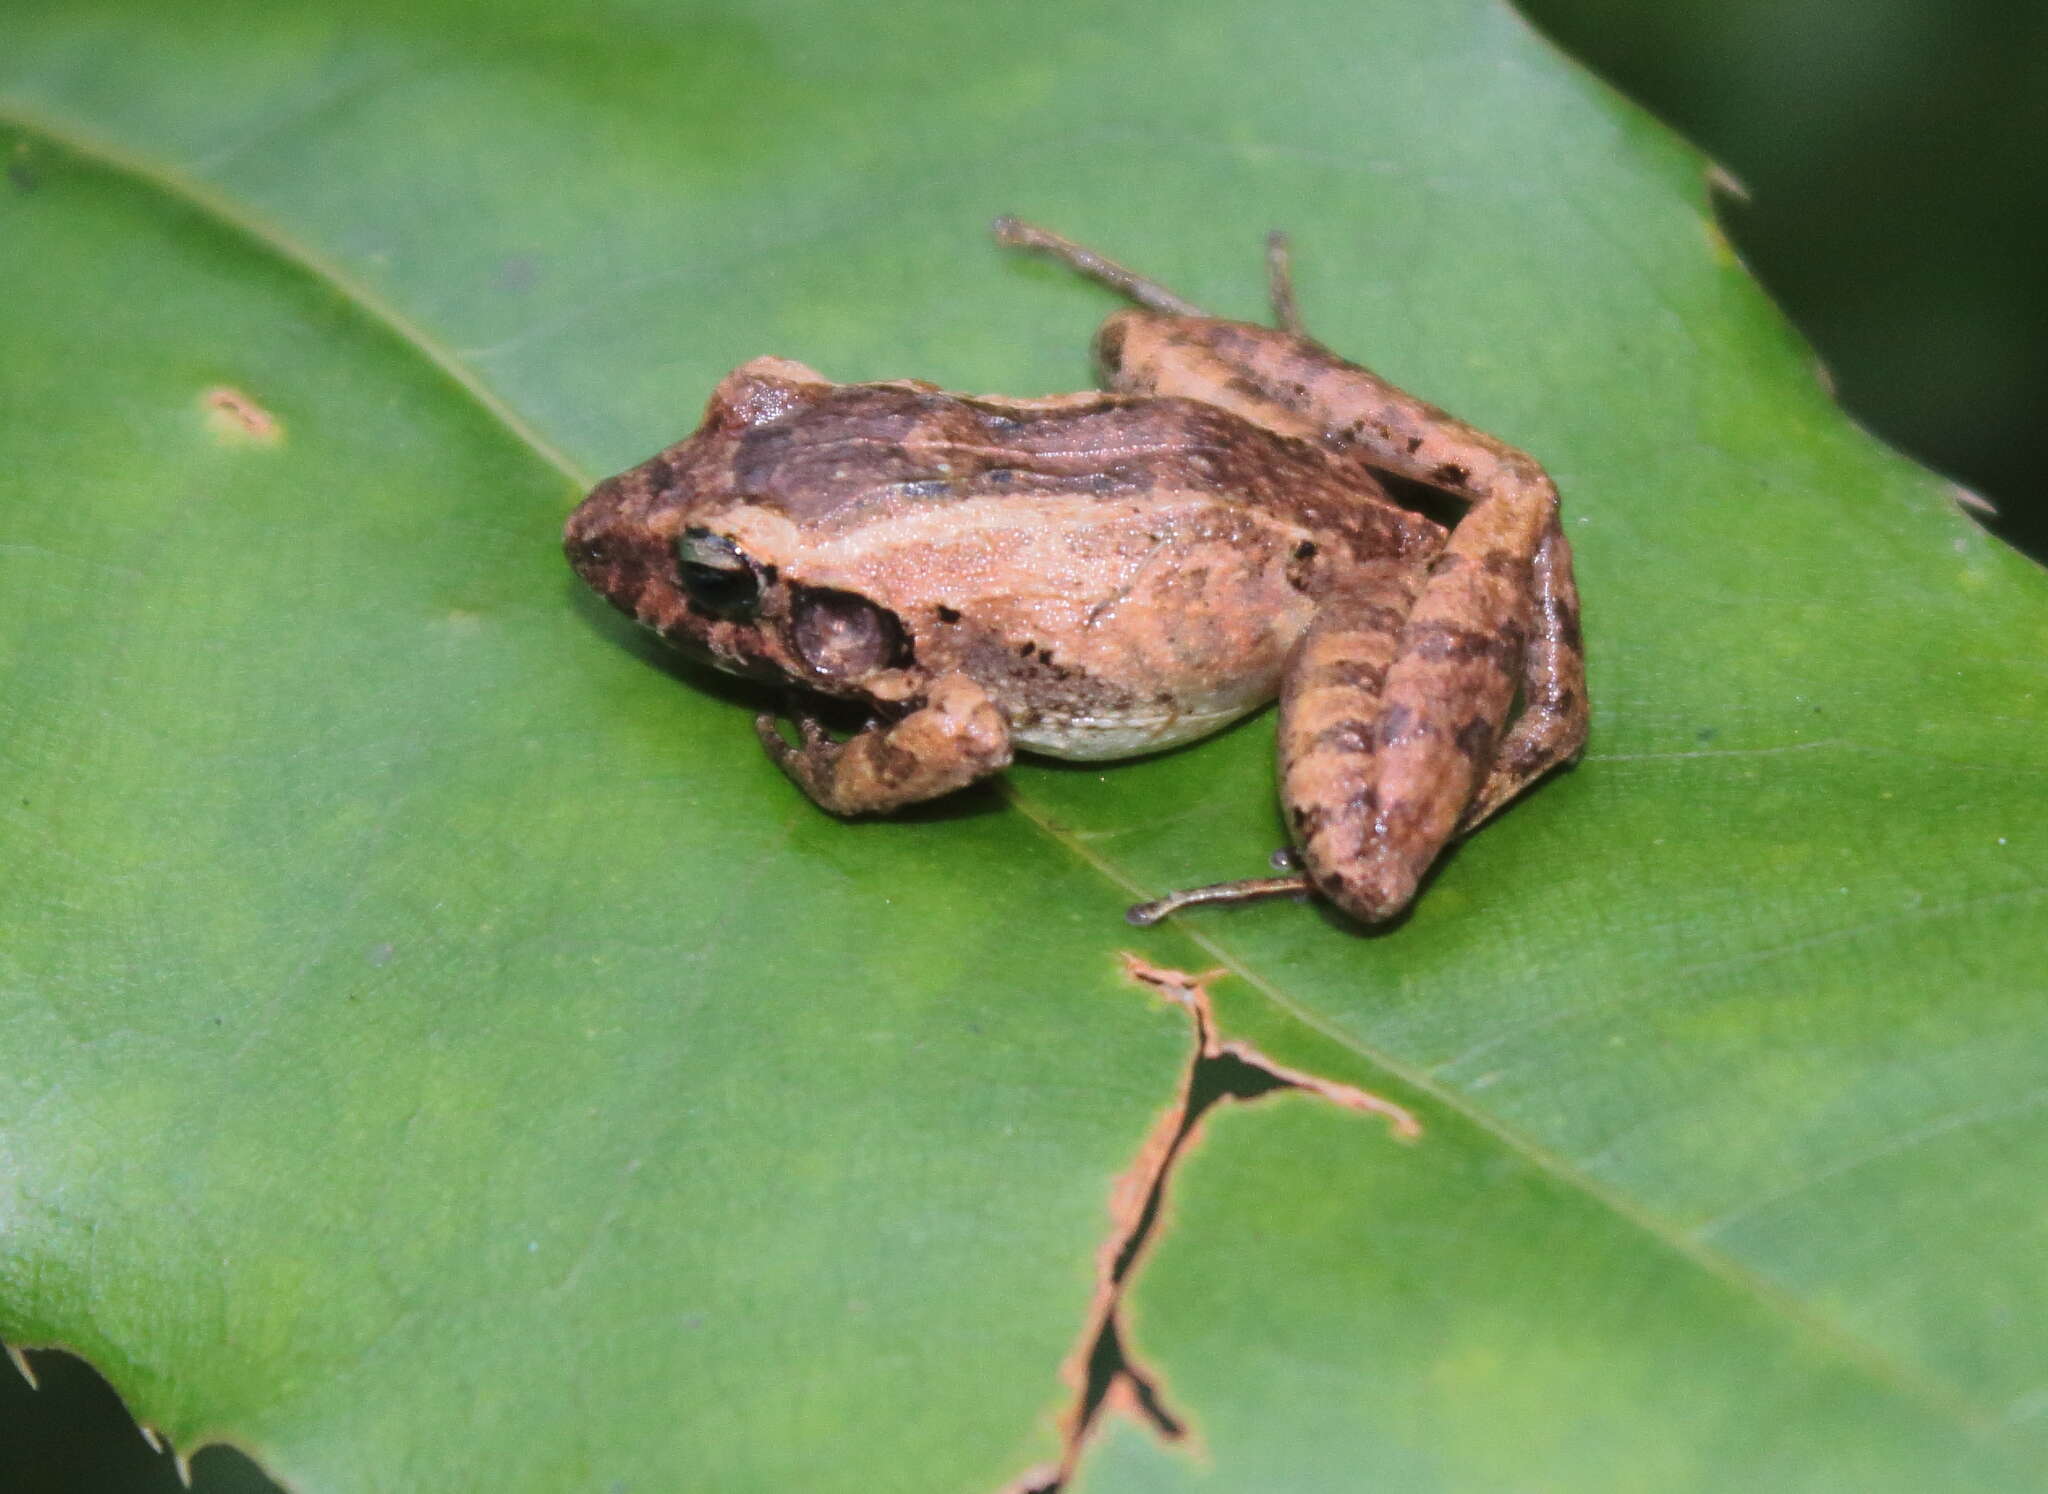 Image of Berkenbusch's Robber Frog